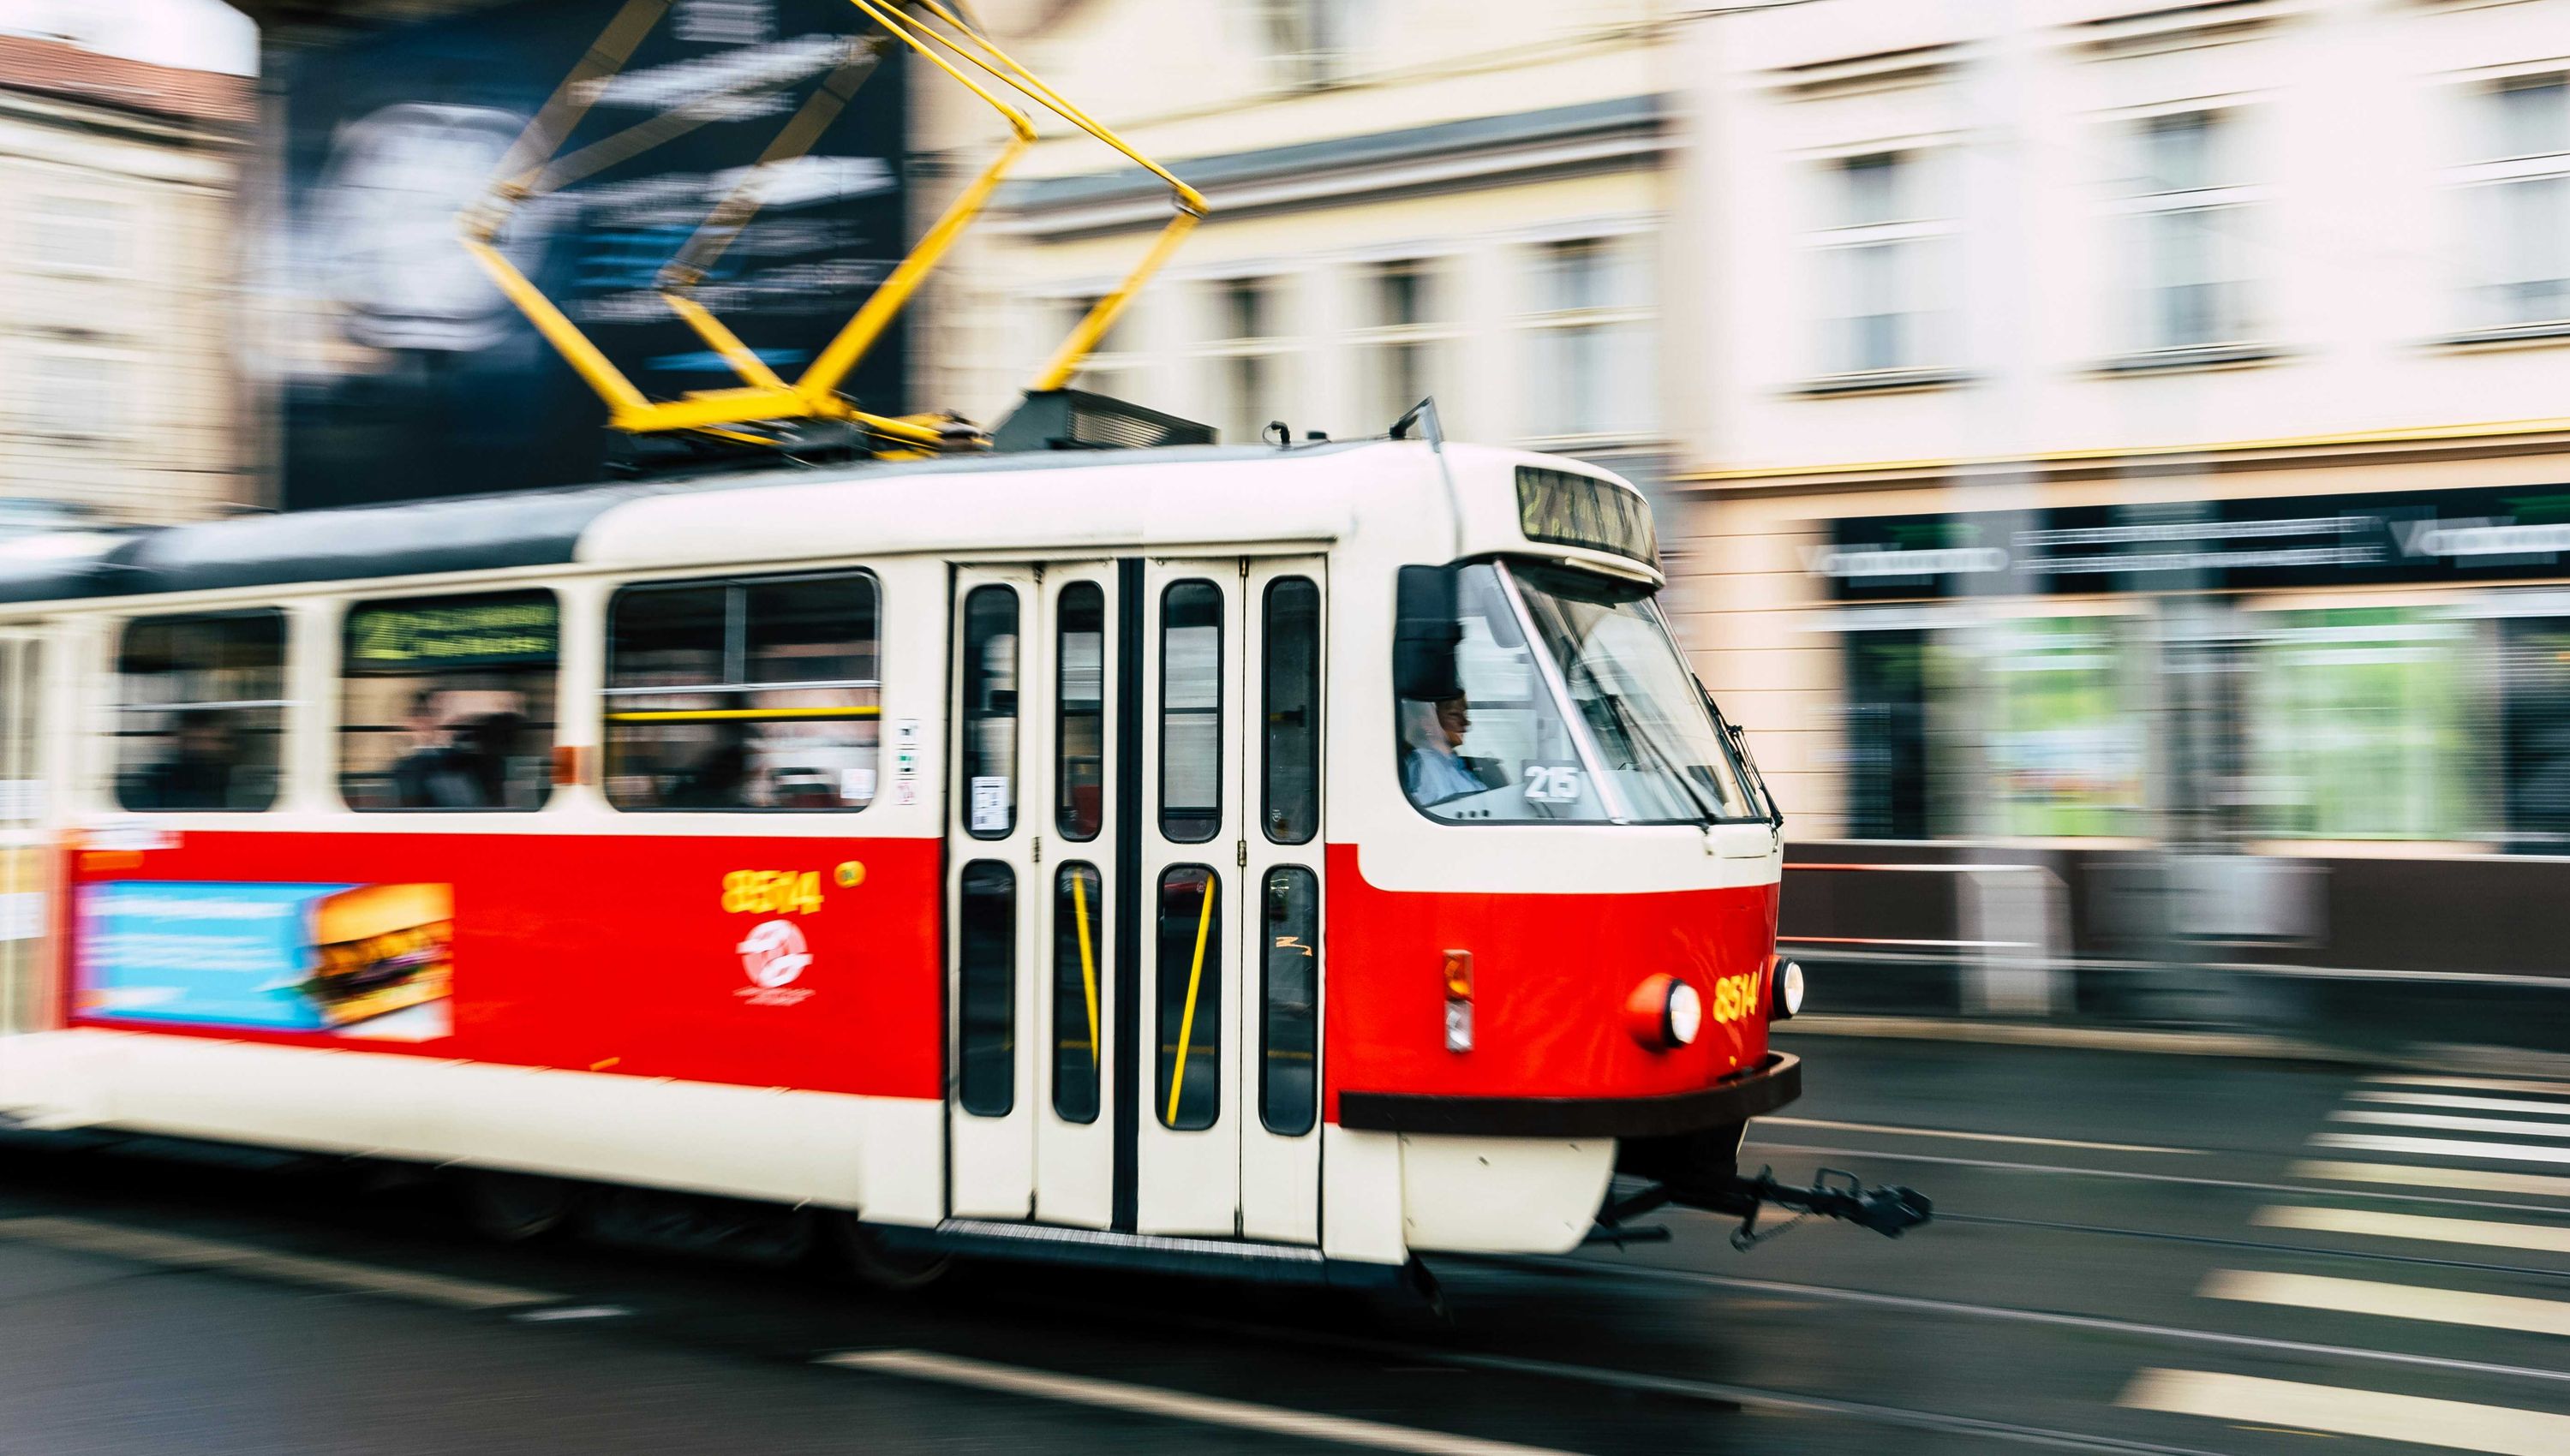 Photo of a tram in a city